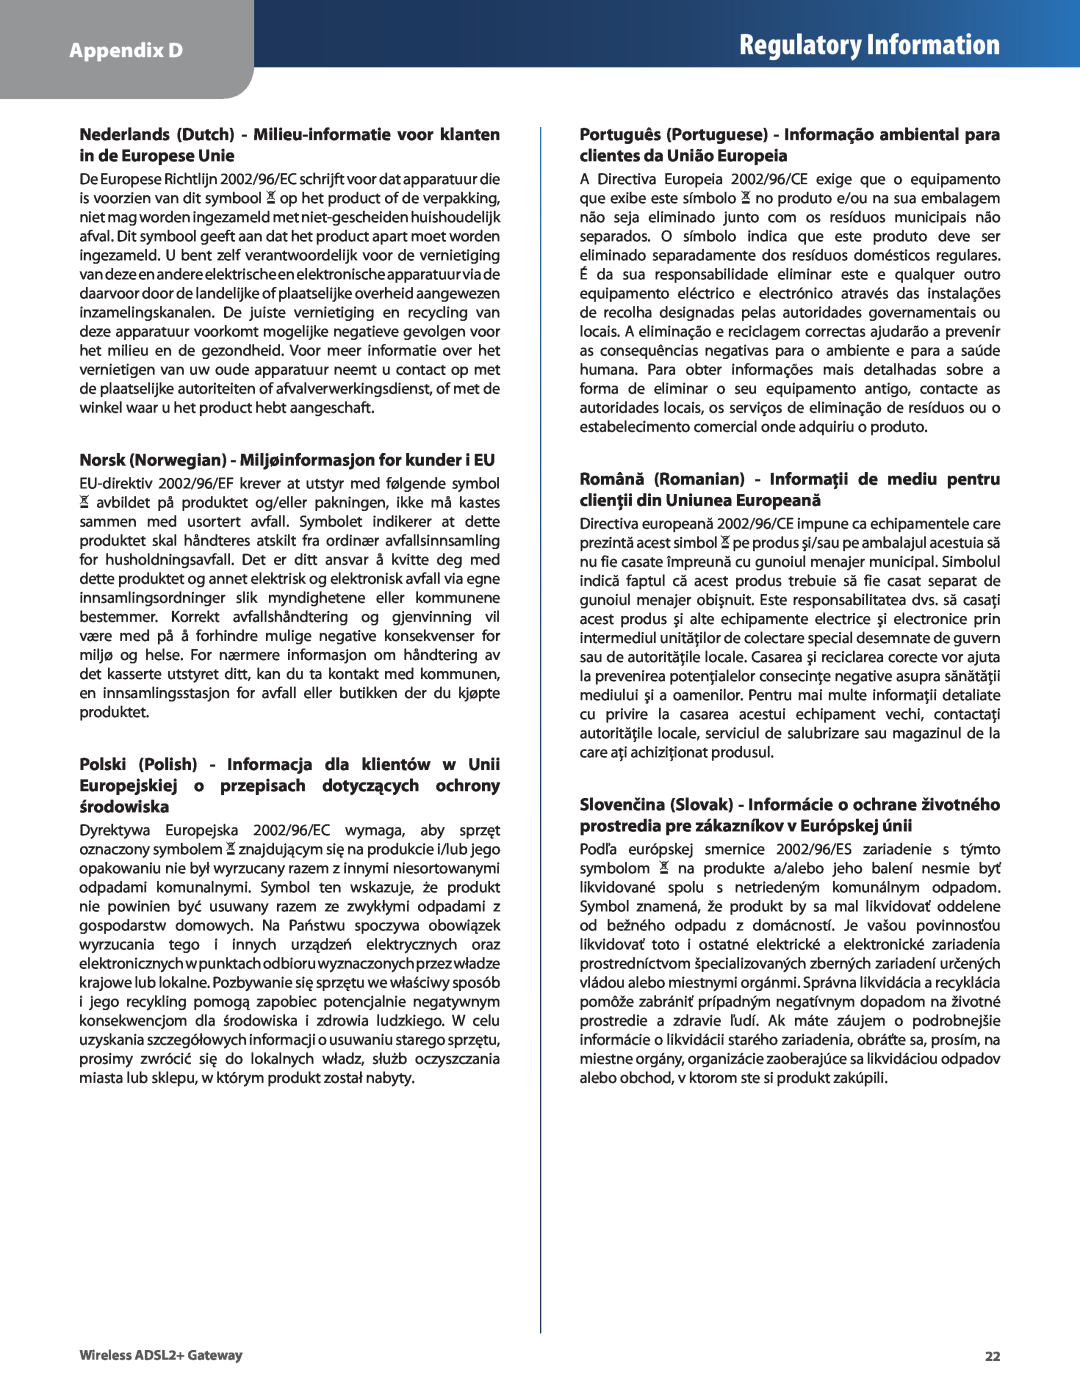 Linksys WAG110 Regulatory Information, Appendix D, Nederlands Dutch - Milieu-informatie voor klanten in de Europese Unie 